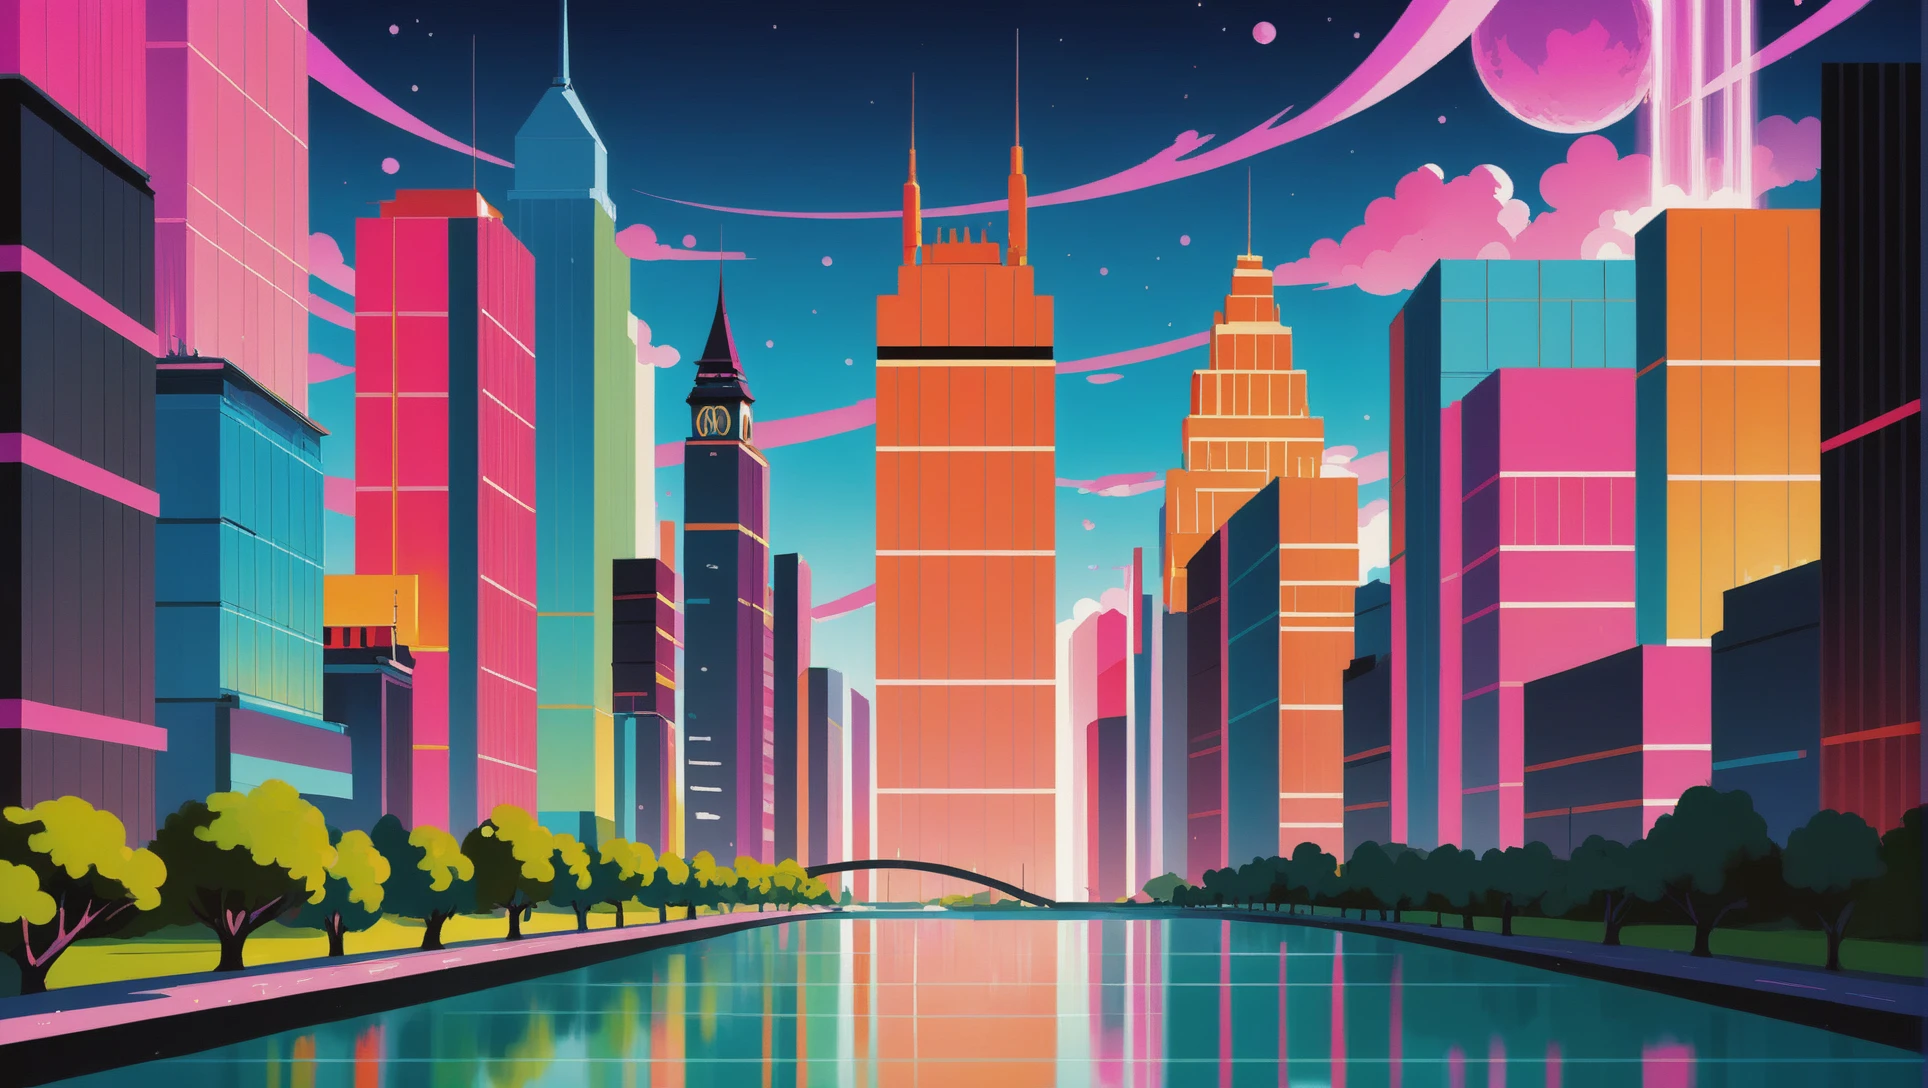 動畫風格電影背景, 宇宙盡頭的歡樂奇幻城市